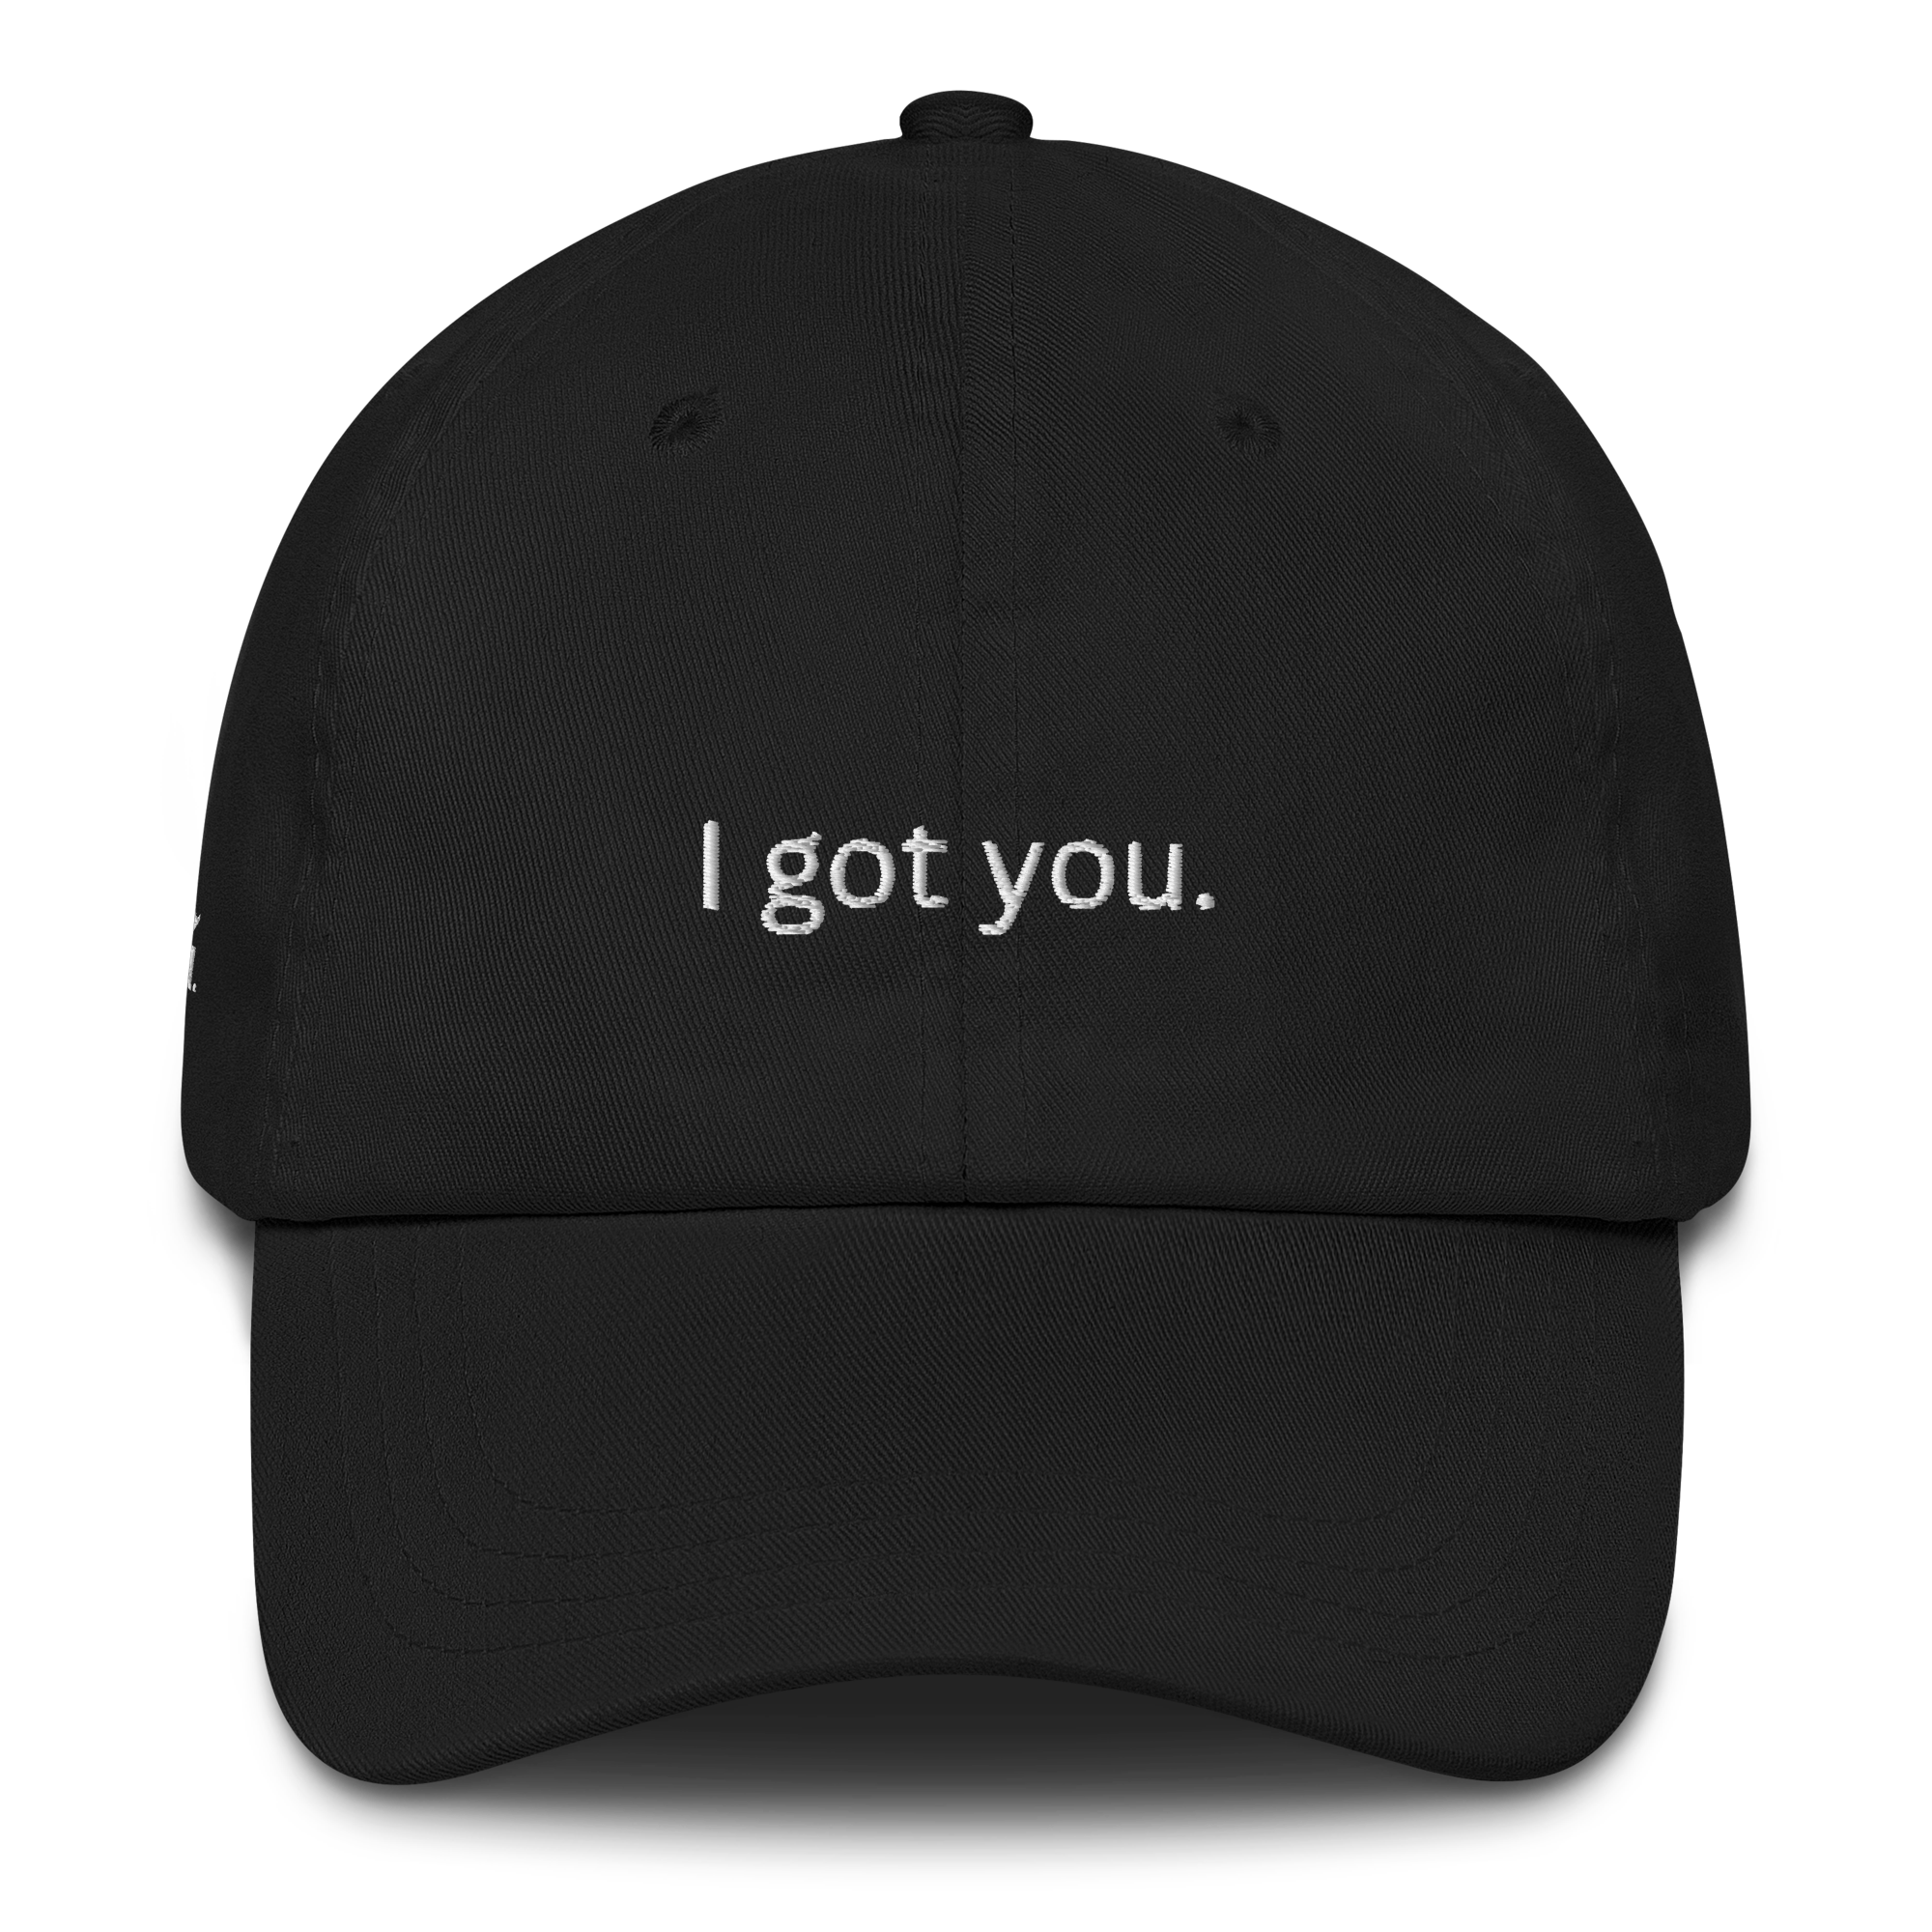 I got you dad hat